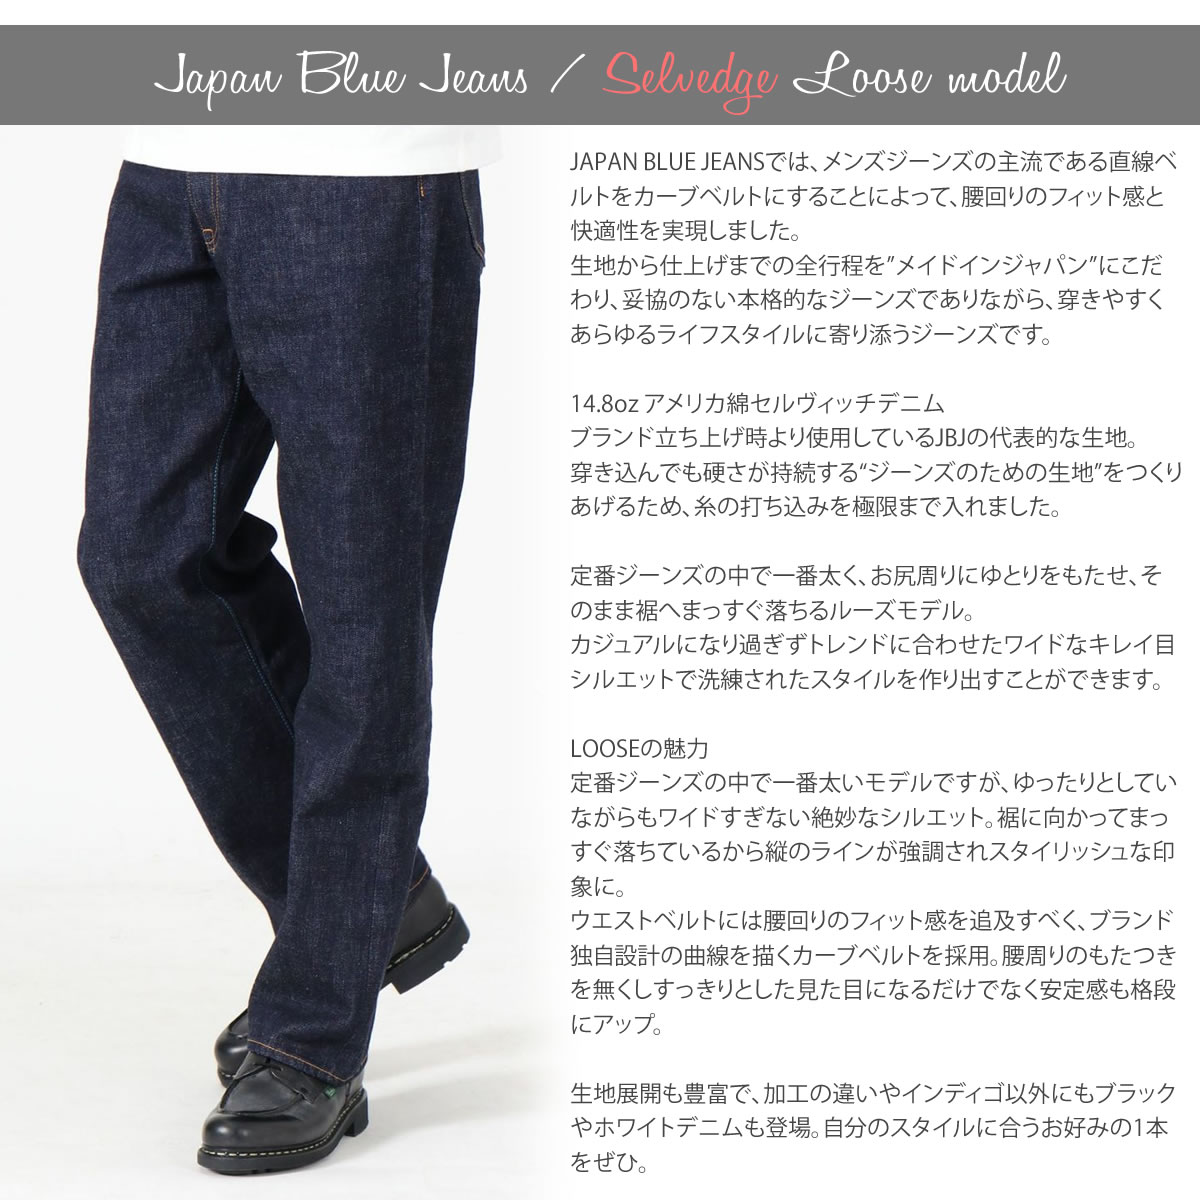 ジャパンブルージーンズ サークル J501 ルーズモデル アメリカ綿 